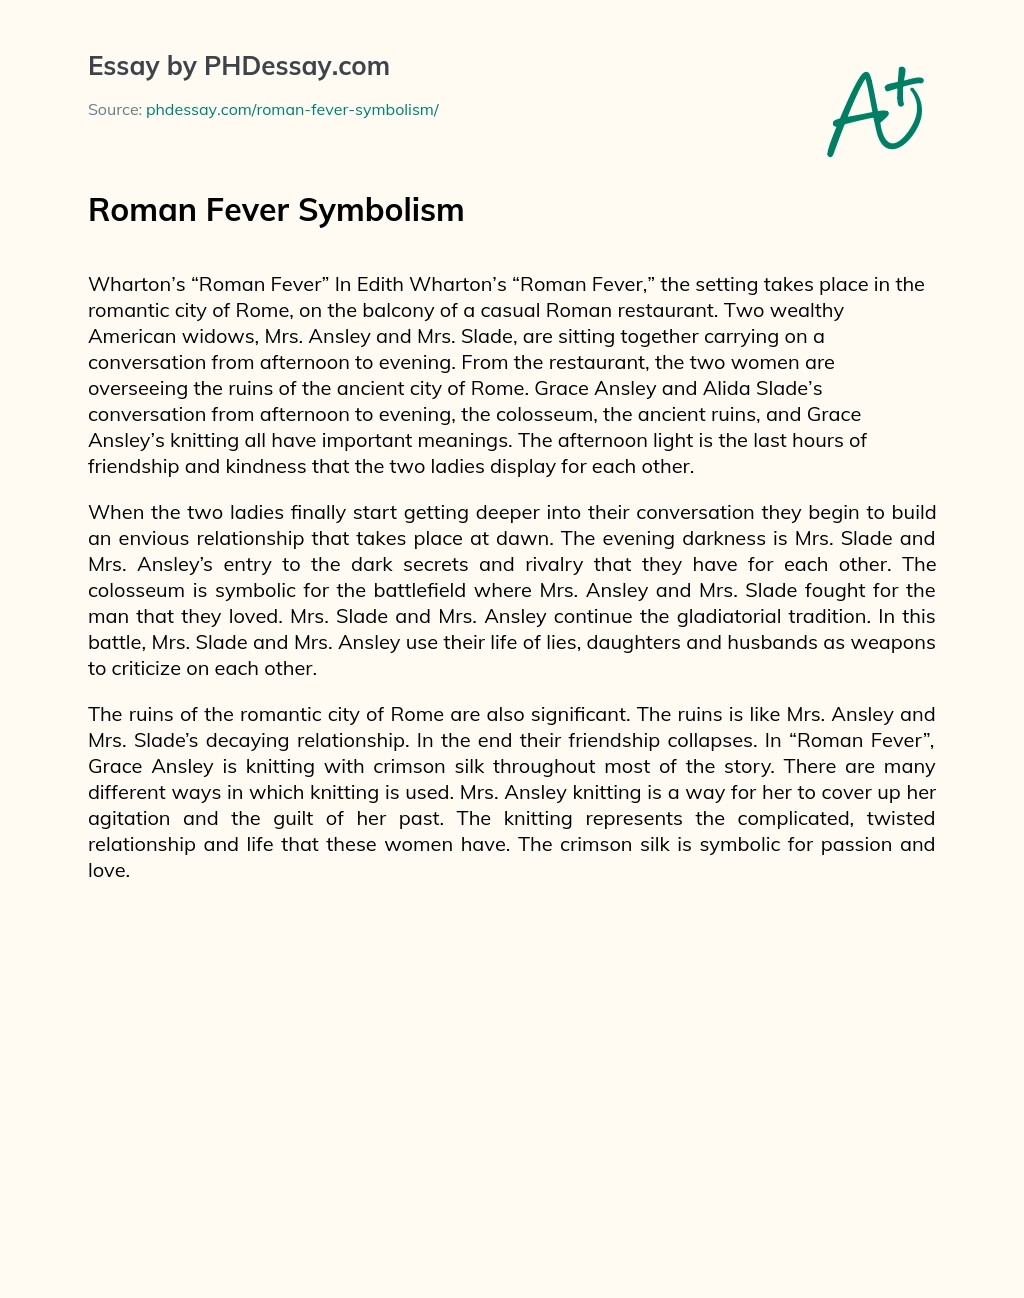 Roman Fever Symbolism essay